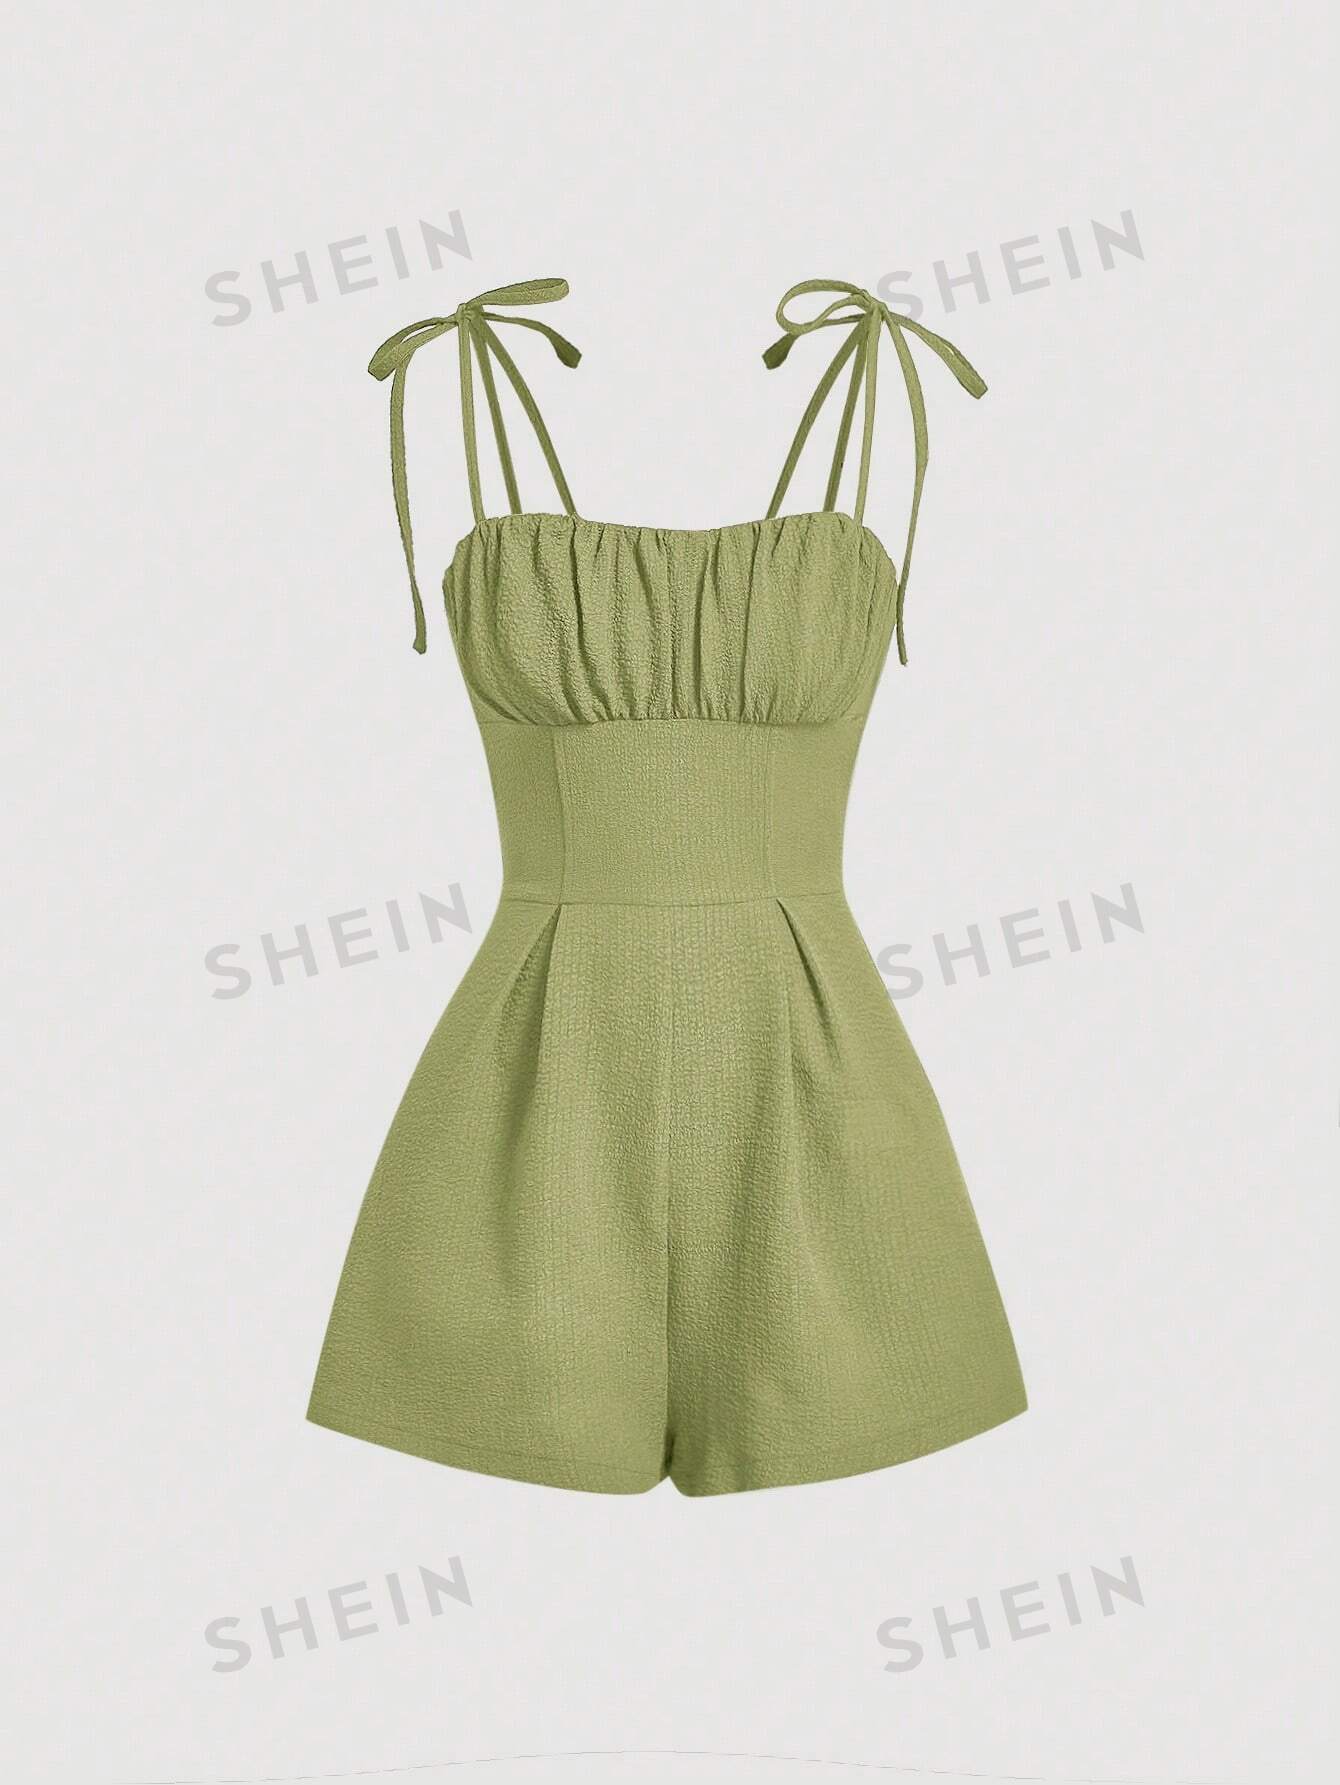 SHEIN MOD женские праздничные шорты-комбинезон на бретельках с цветочным принтом, лаймово-зеленый